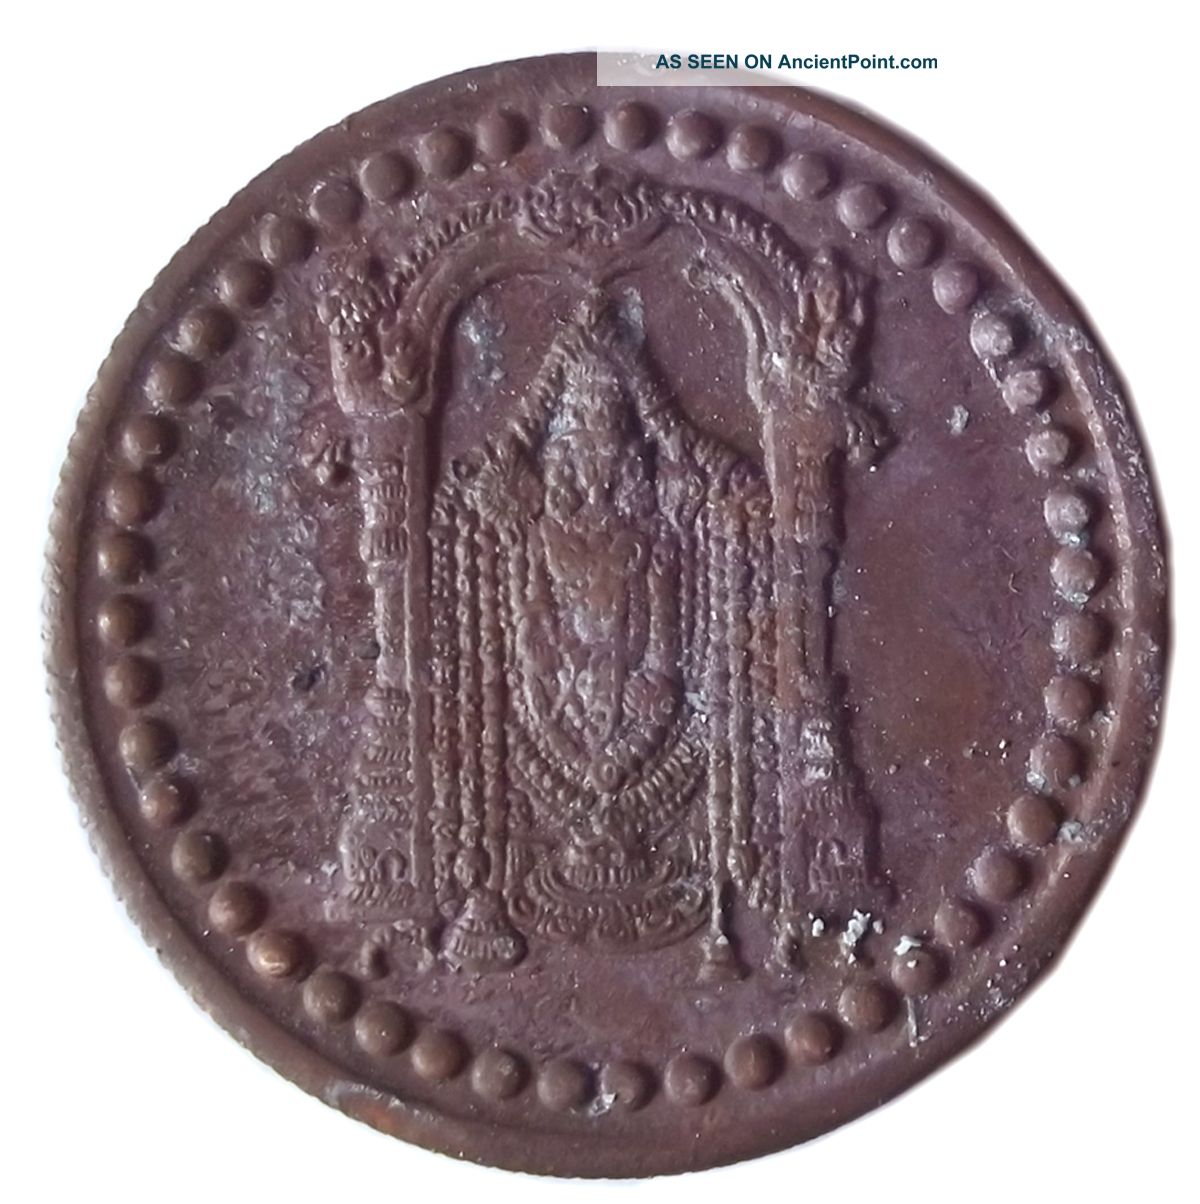 Tirupati Balaji Curved East India Company One Anna Coin Age 1717 (ce - 18) India photo